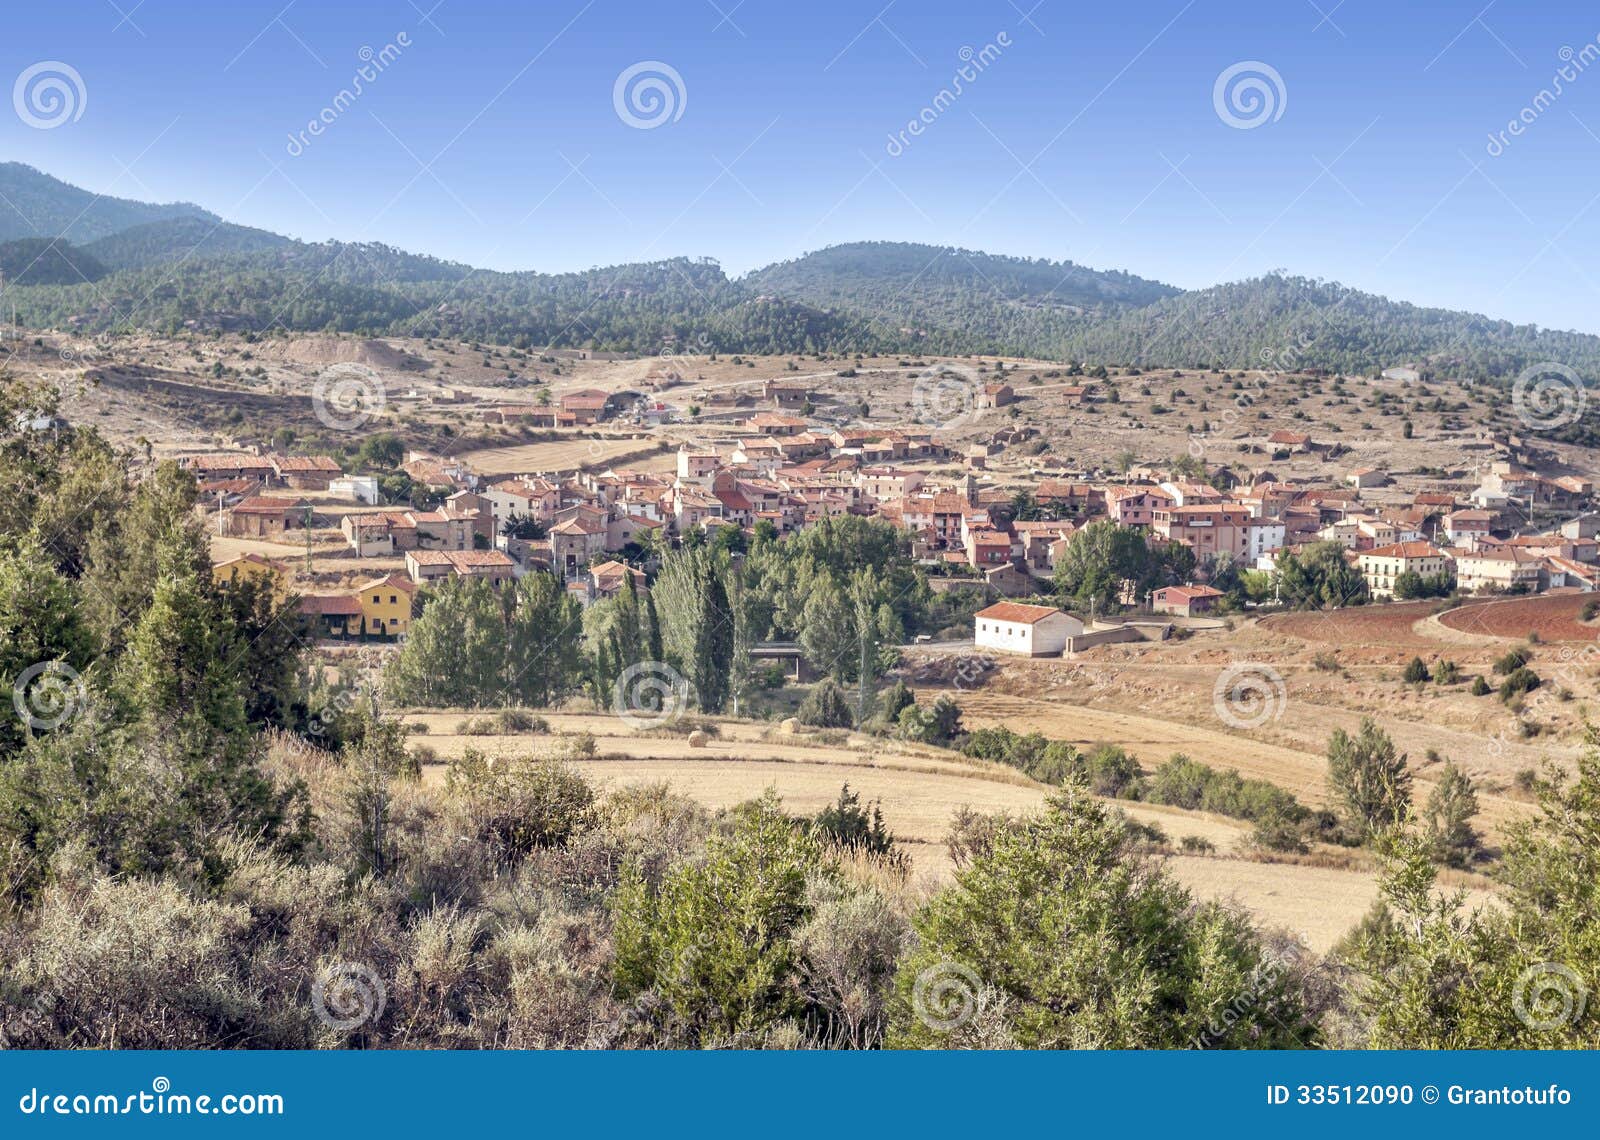 village of bezas